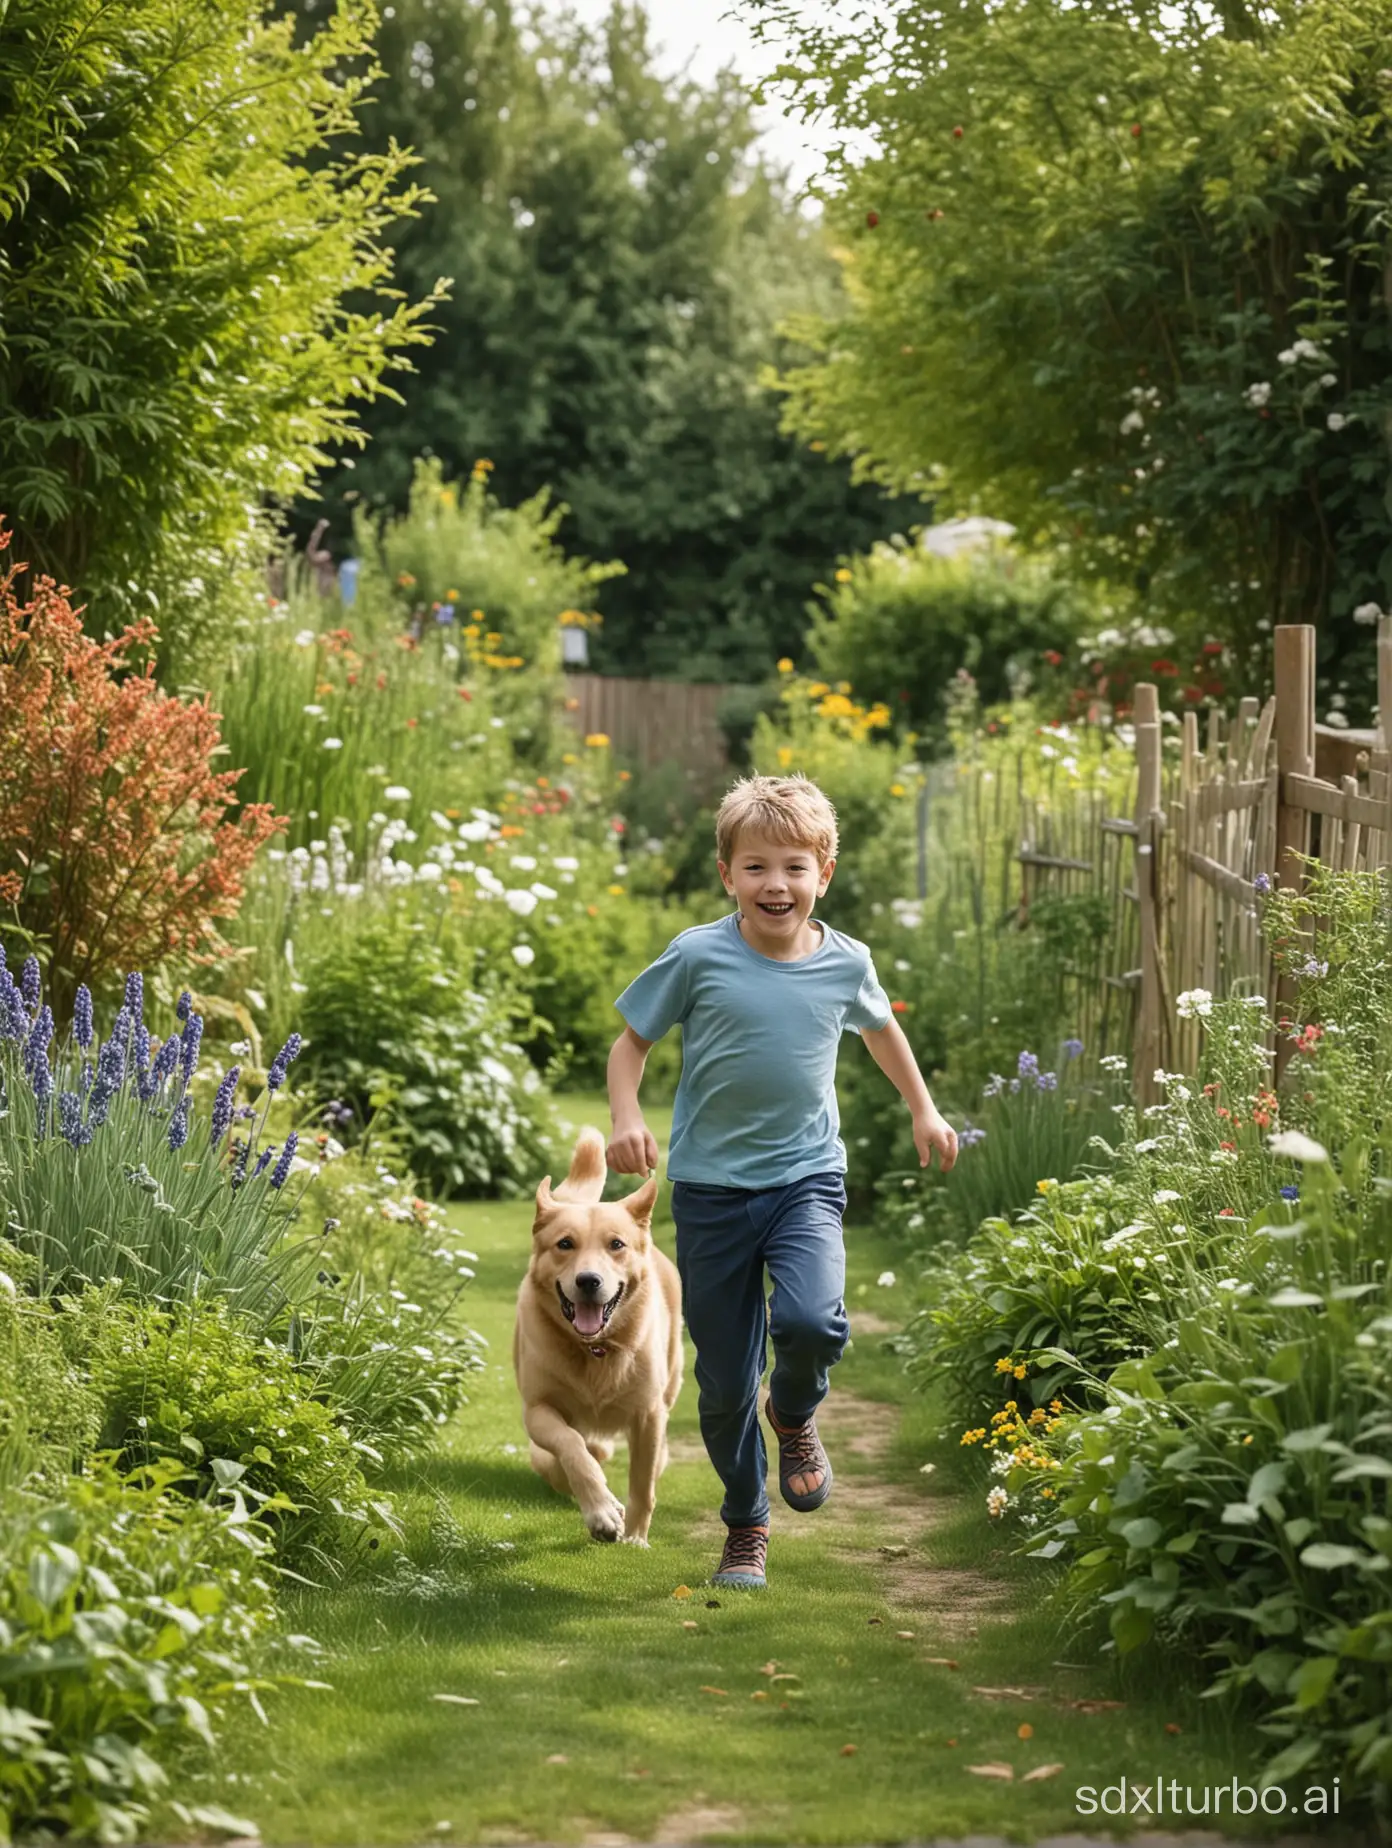 Energetic-Boy-Enjoying-Playtime-with-Loyal-Dog-in-Lush-Garden